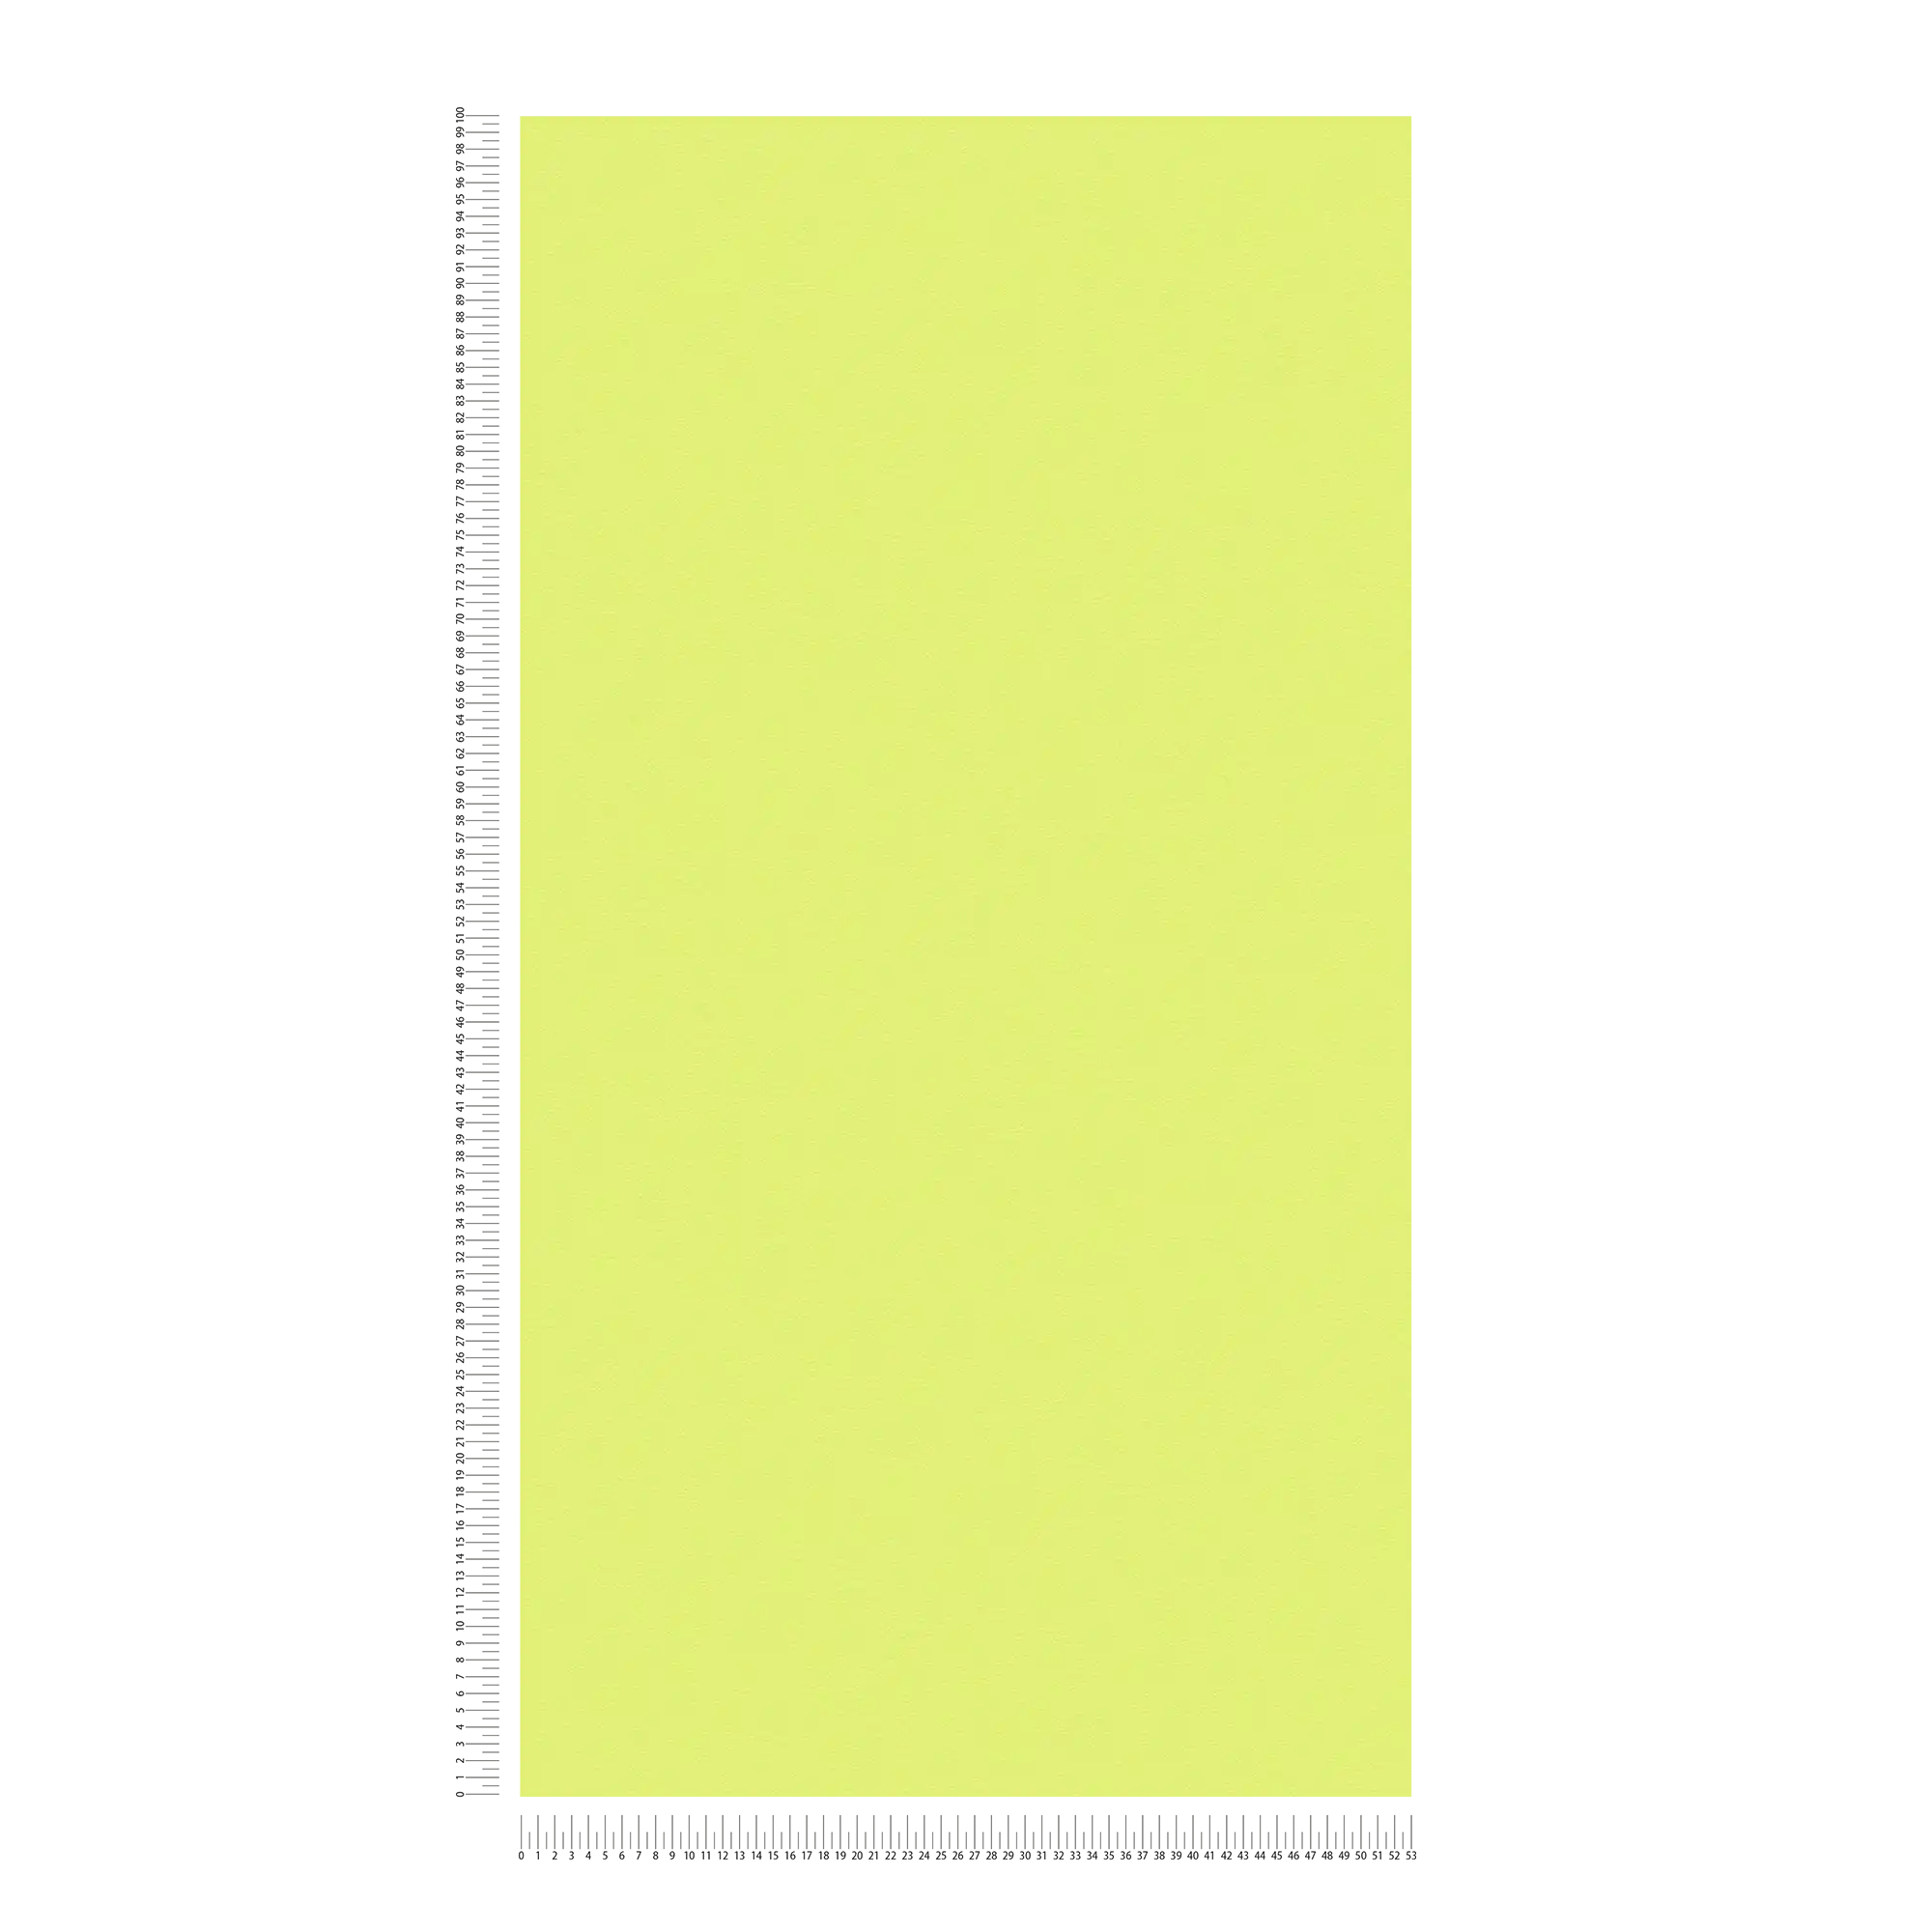             Carta da parati tinta unicat verde lime con effetto struttura, verde chiaro
        